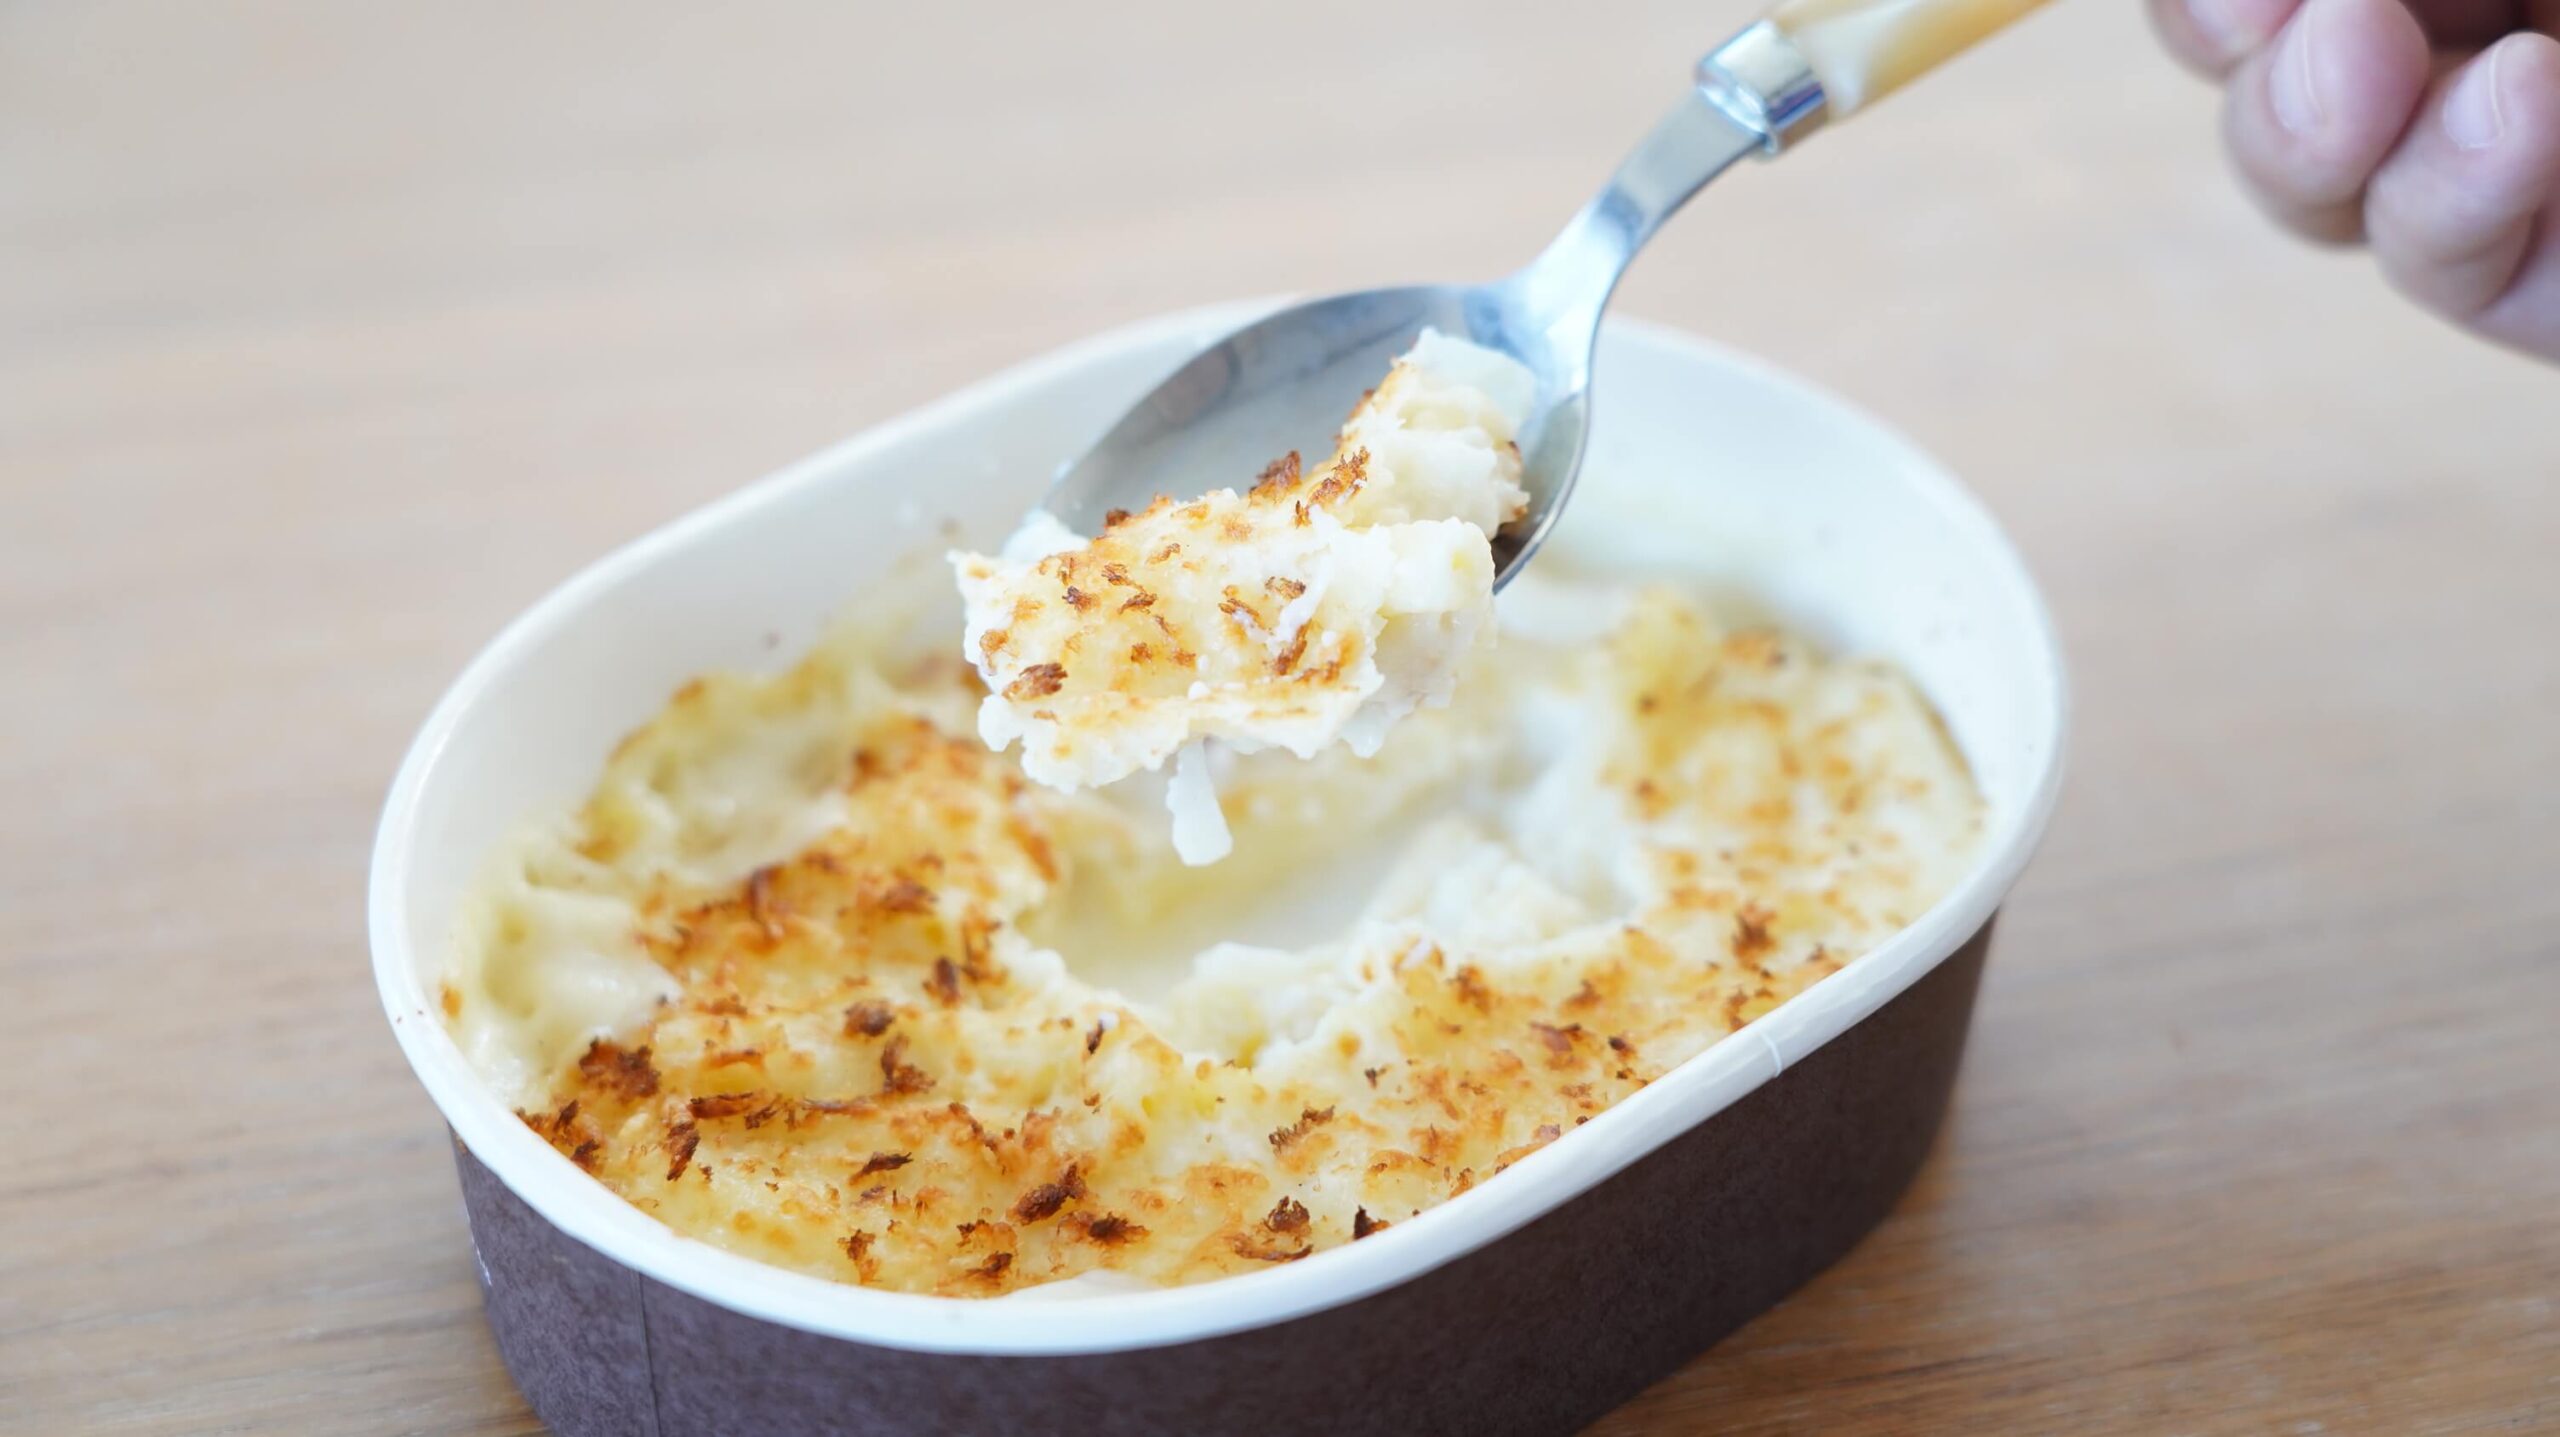 セブンイレブンの冷凍食品「チーズの香り広がる・マカロニグラタン」をスプーンですくっている写真